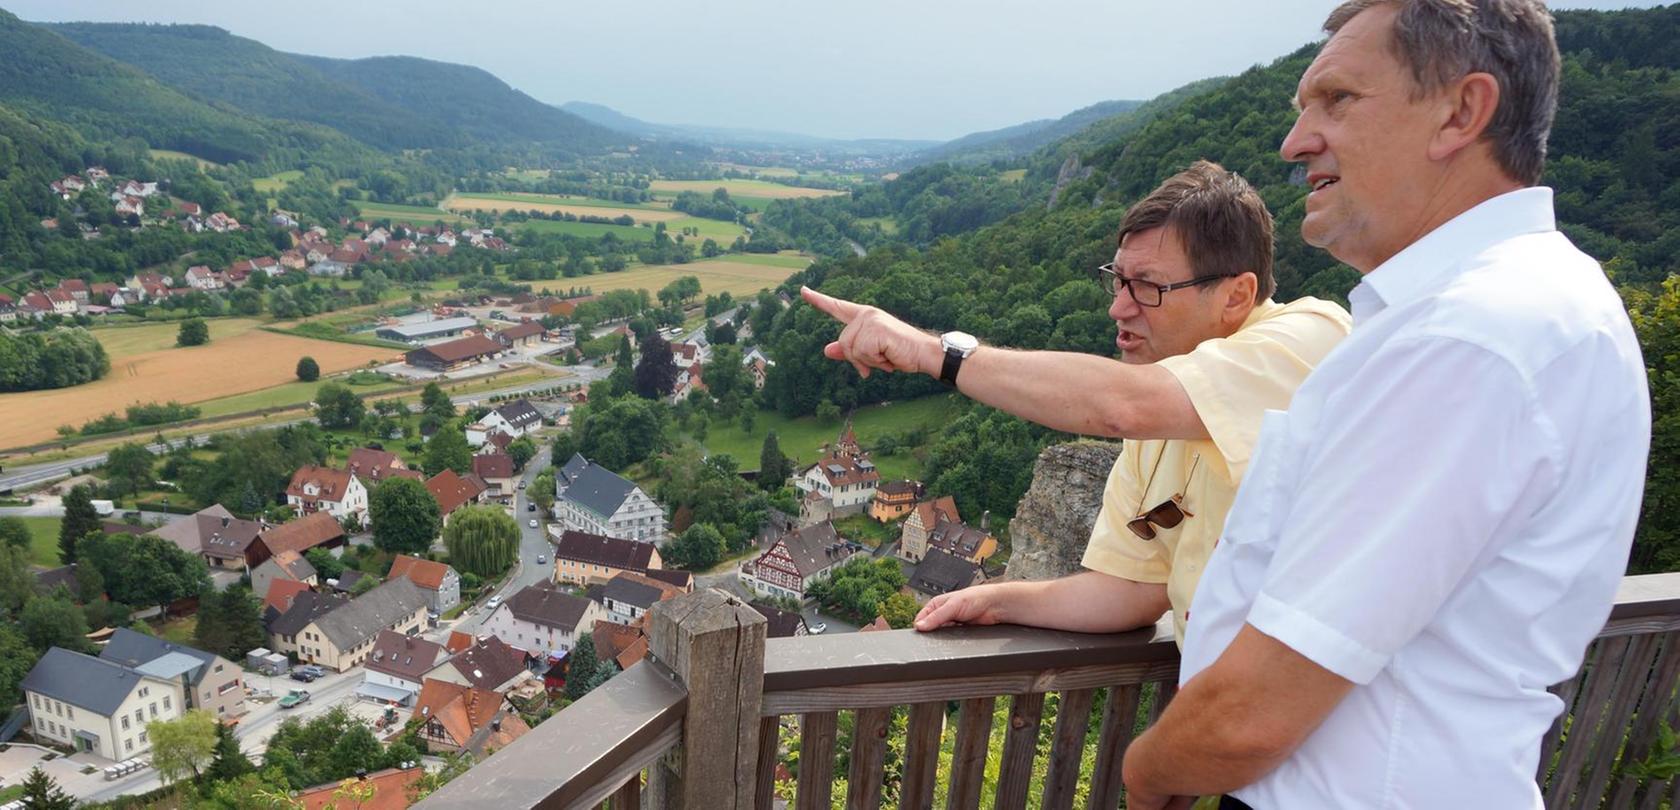 Wanderwege in der Fränkischen Schweiz werden digital